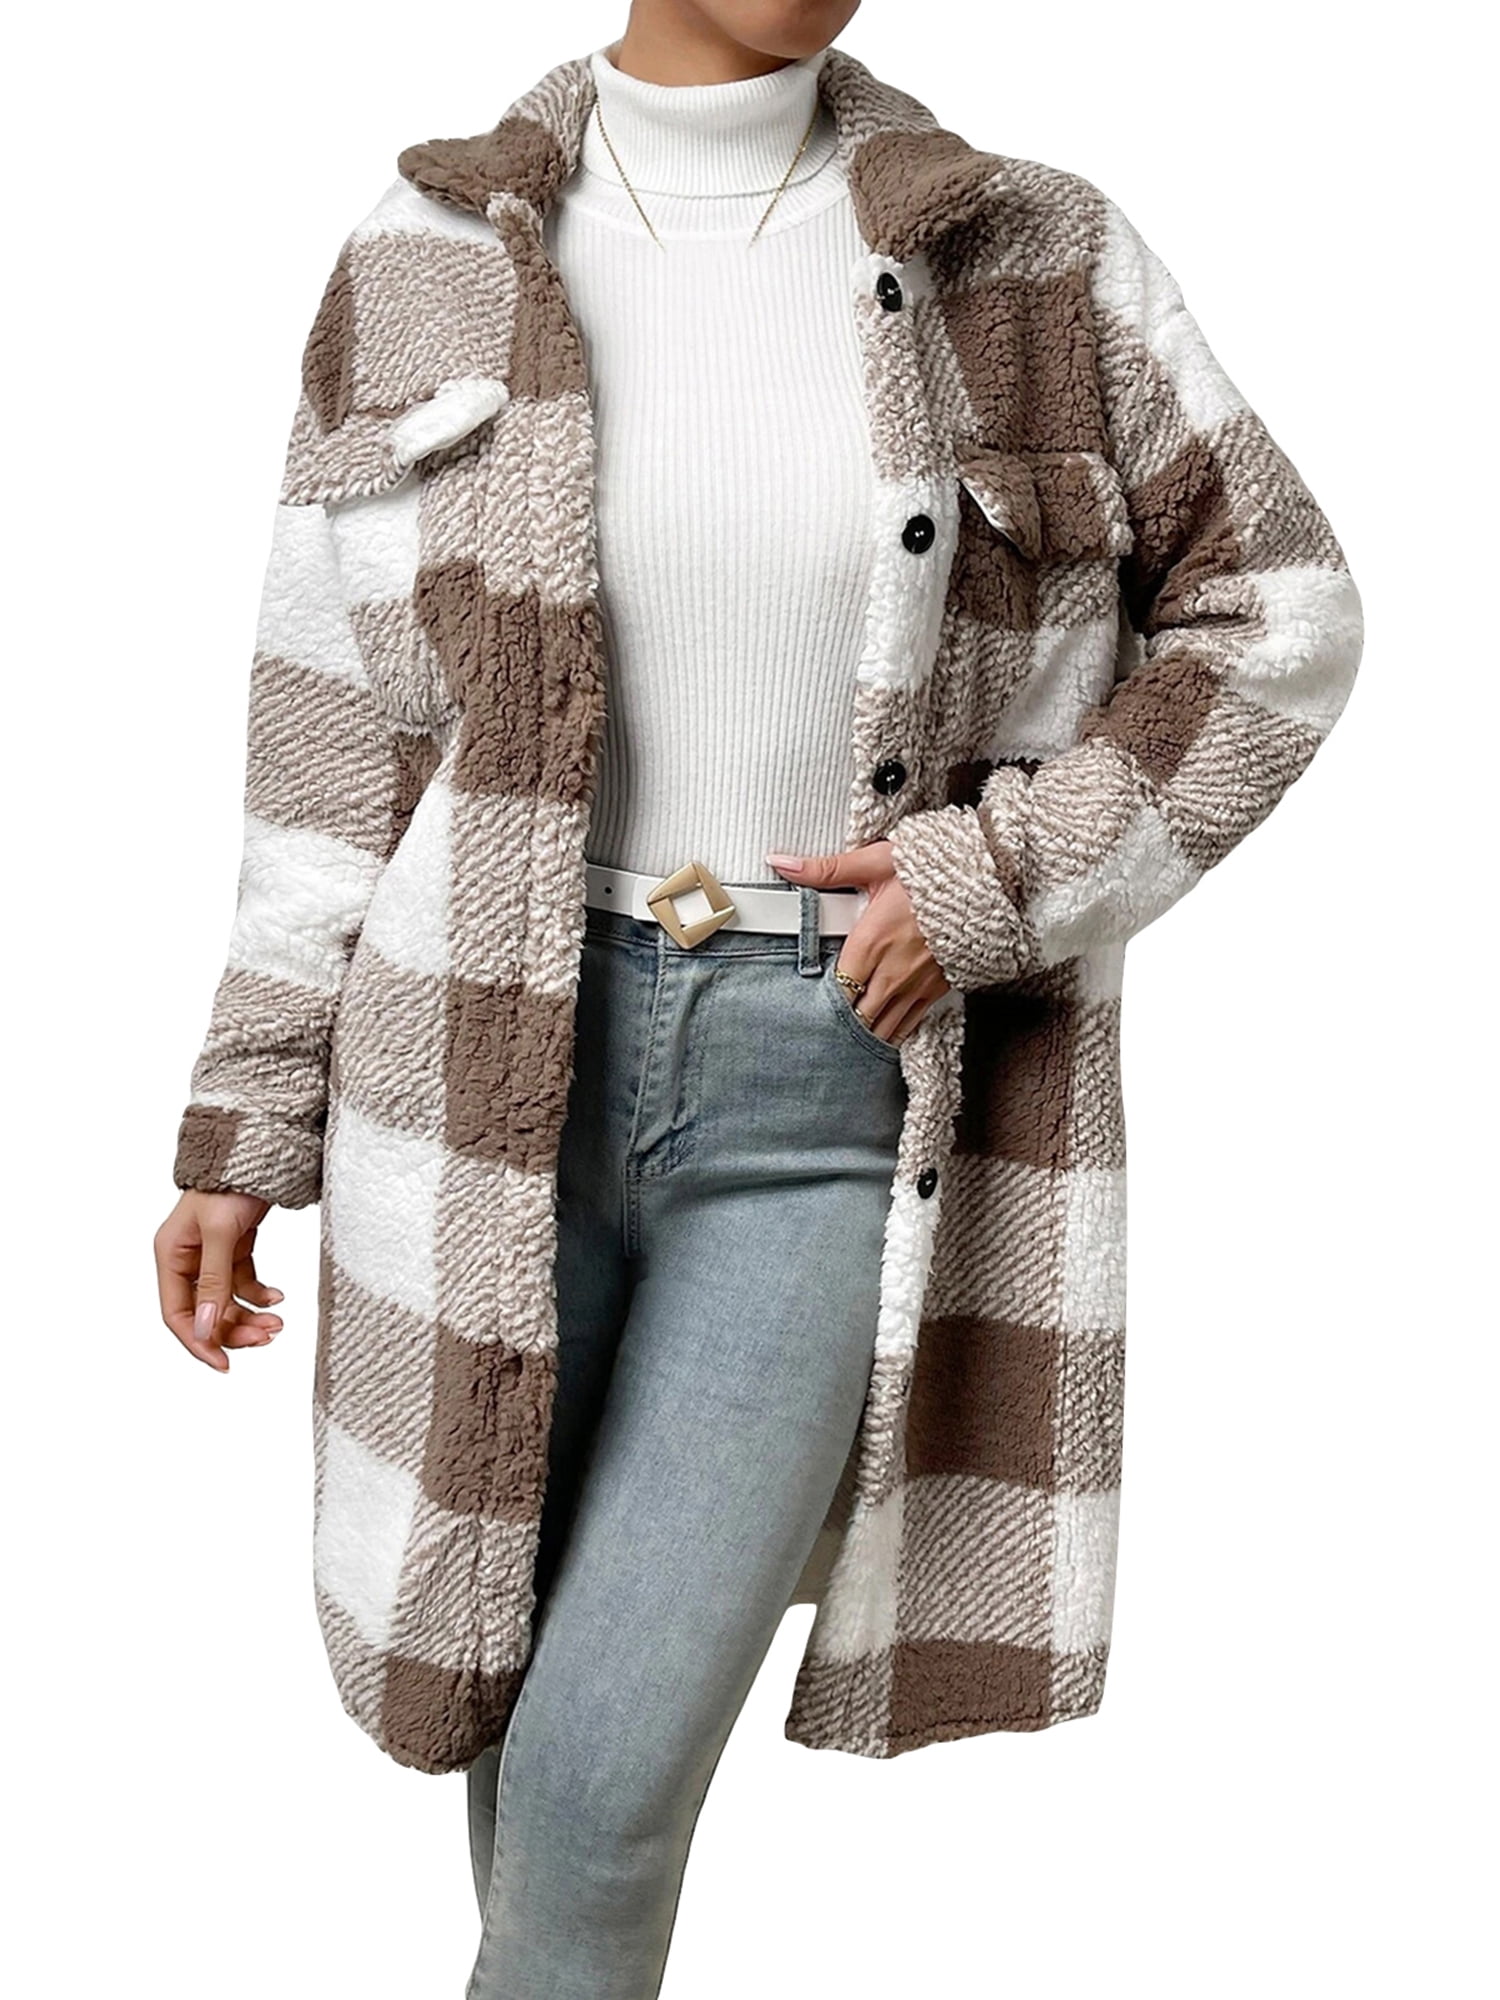 Pudcoco Women's Winter Coats Fuzzy Fleece Sherpa Jacket Plaid Outerwear ...